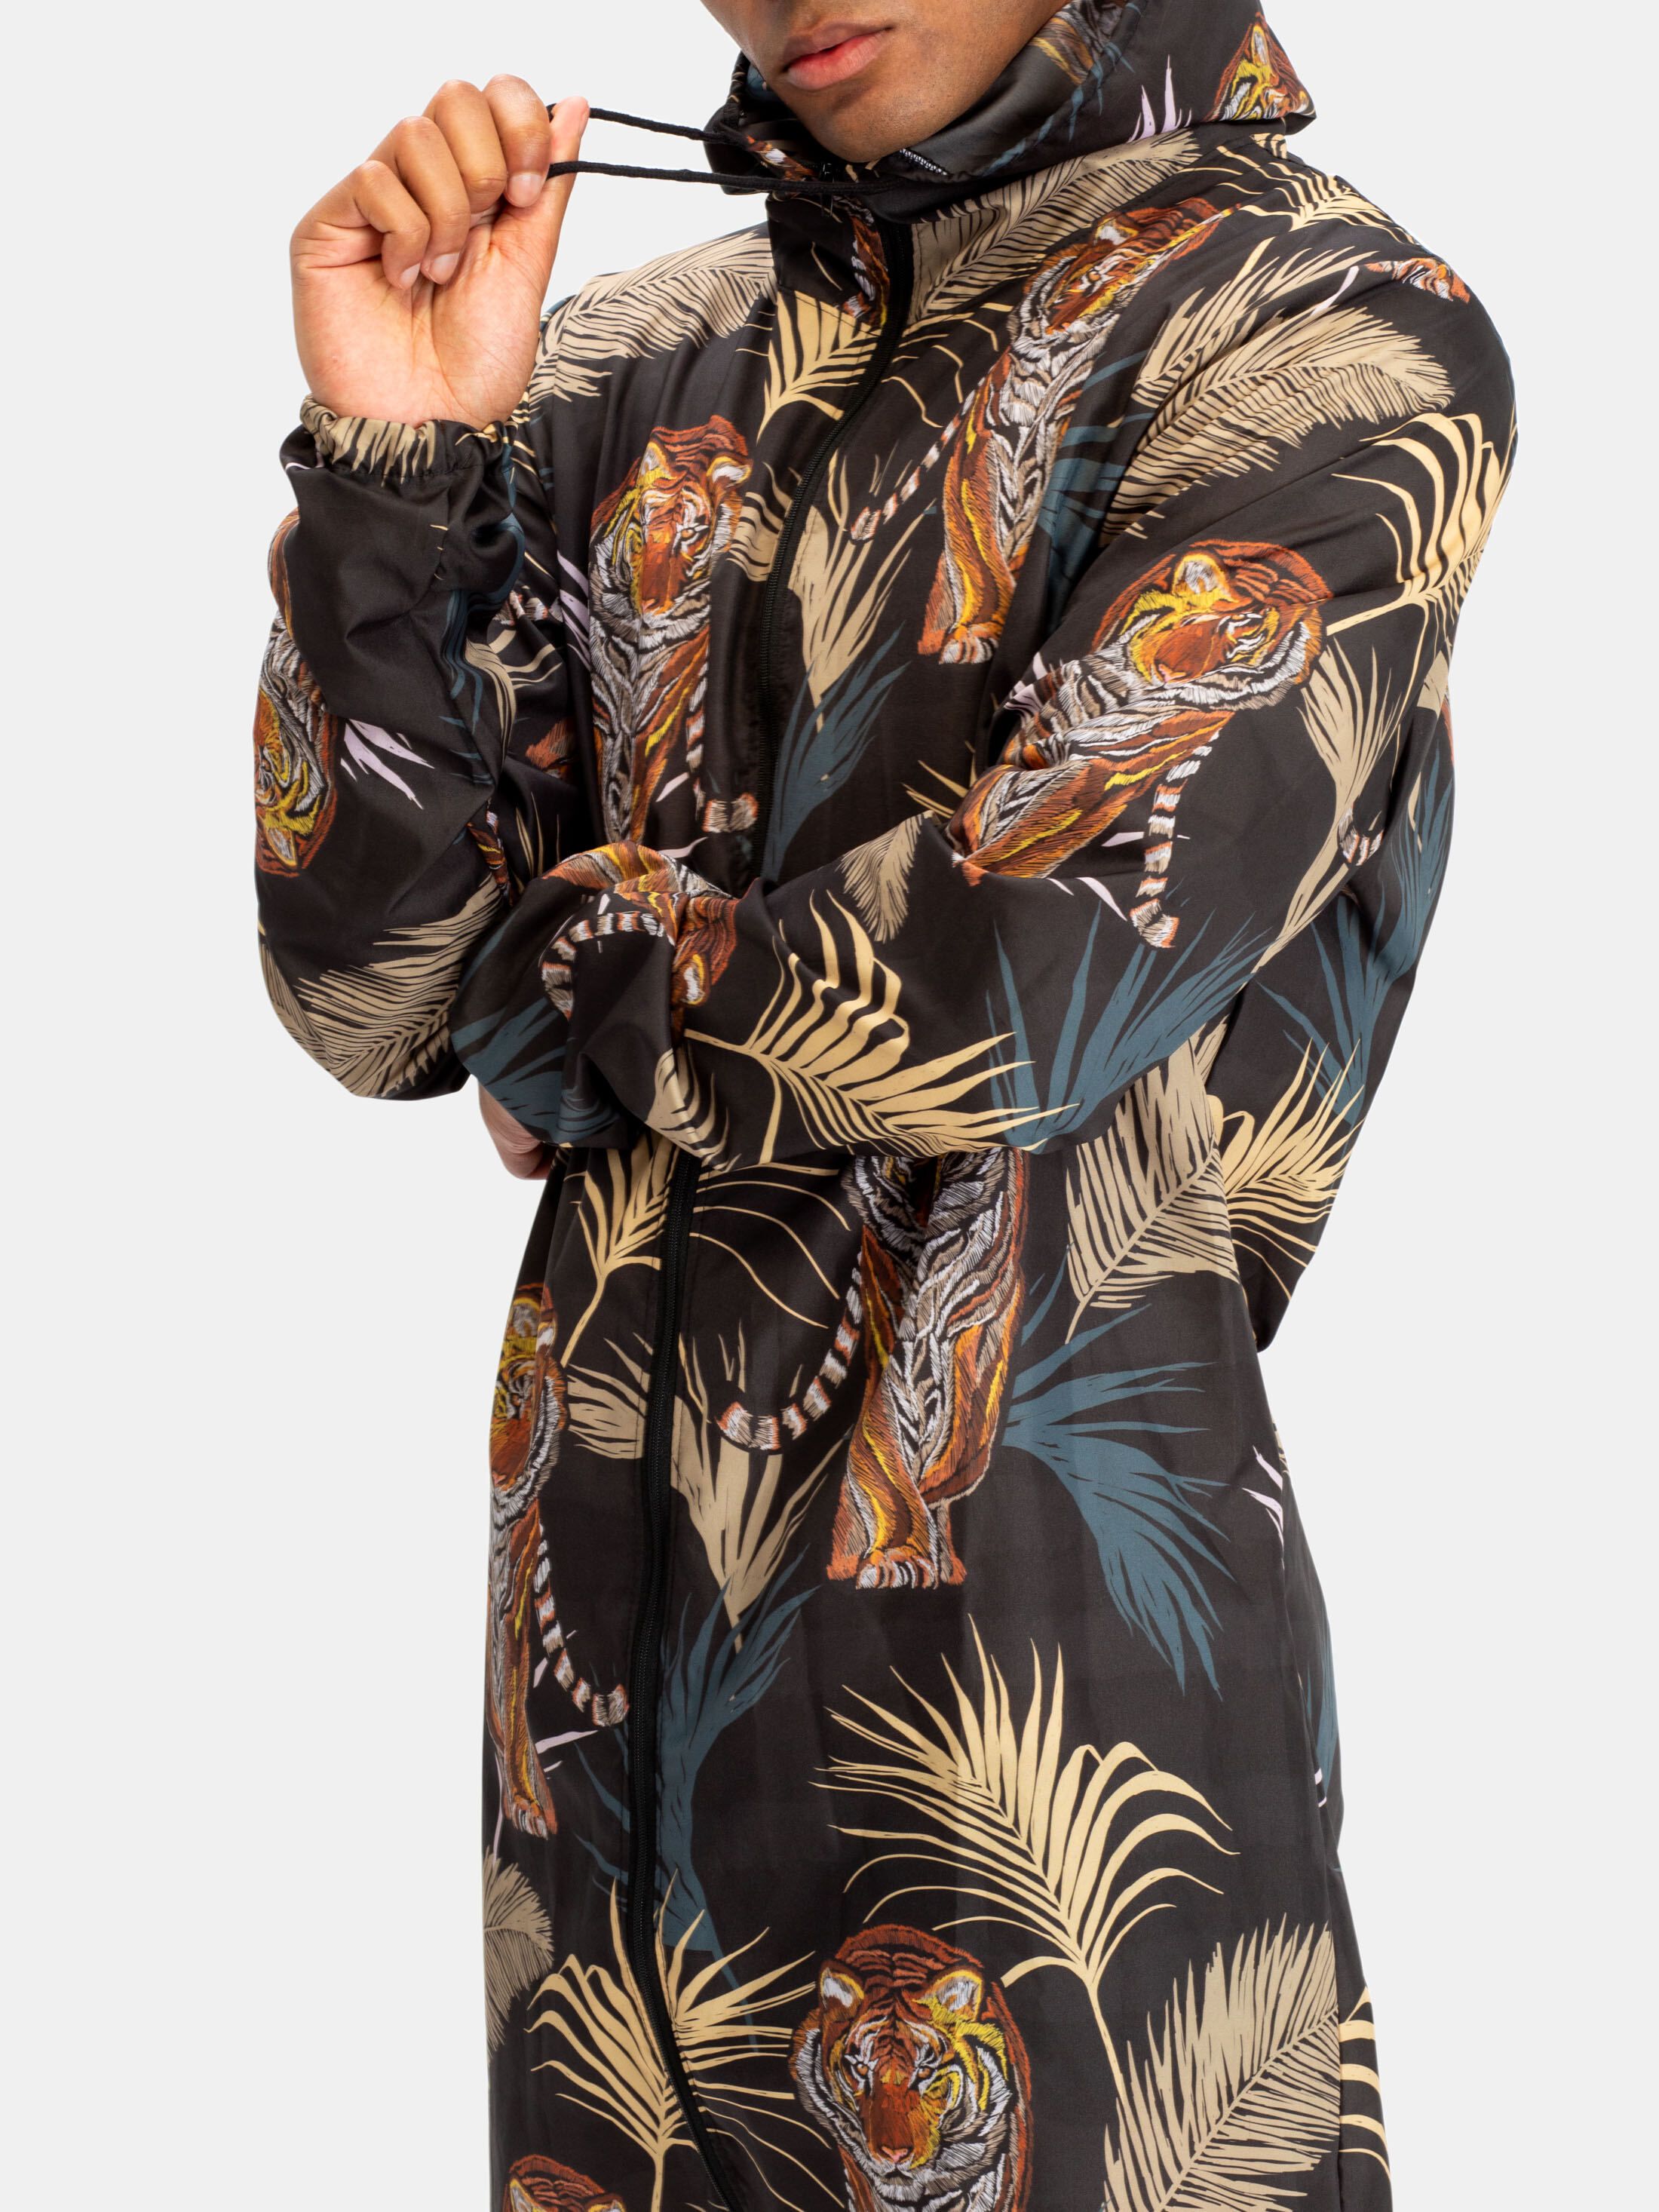 design your own full Hazmat Suit